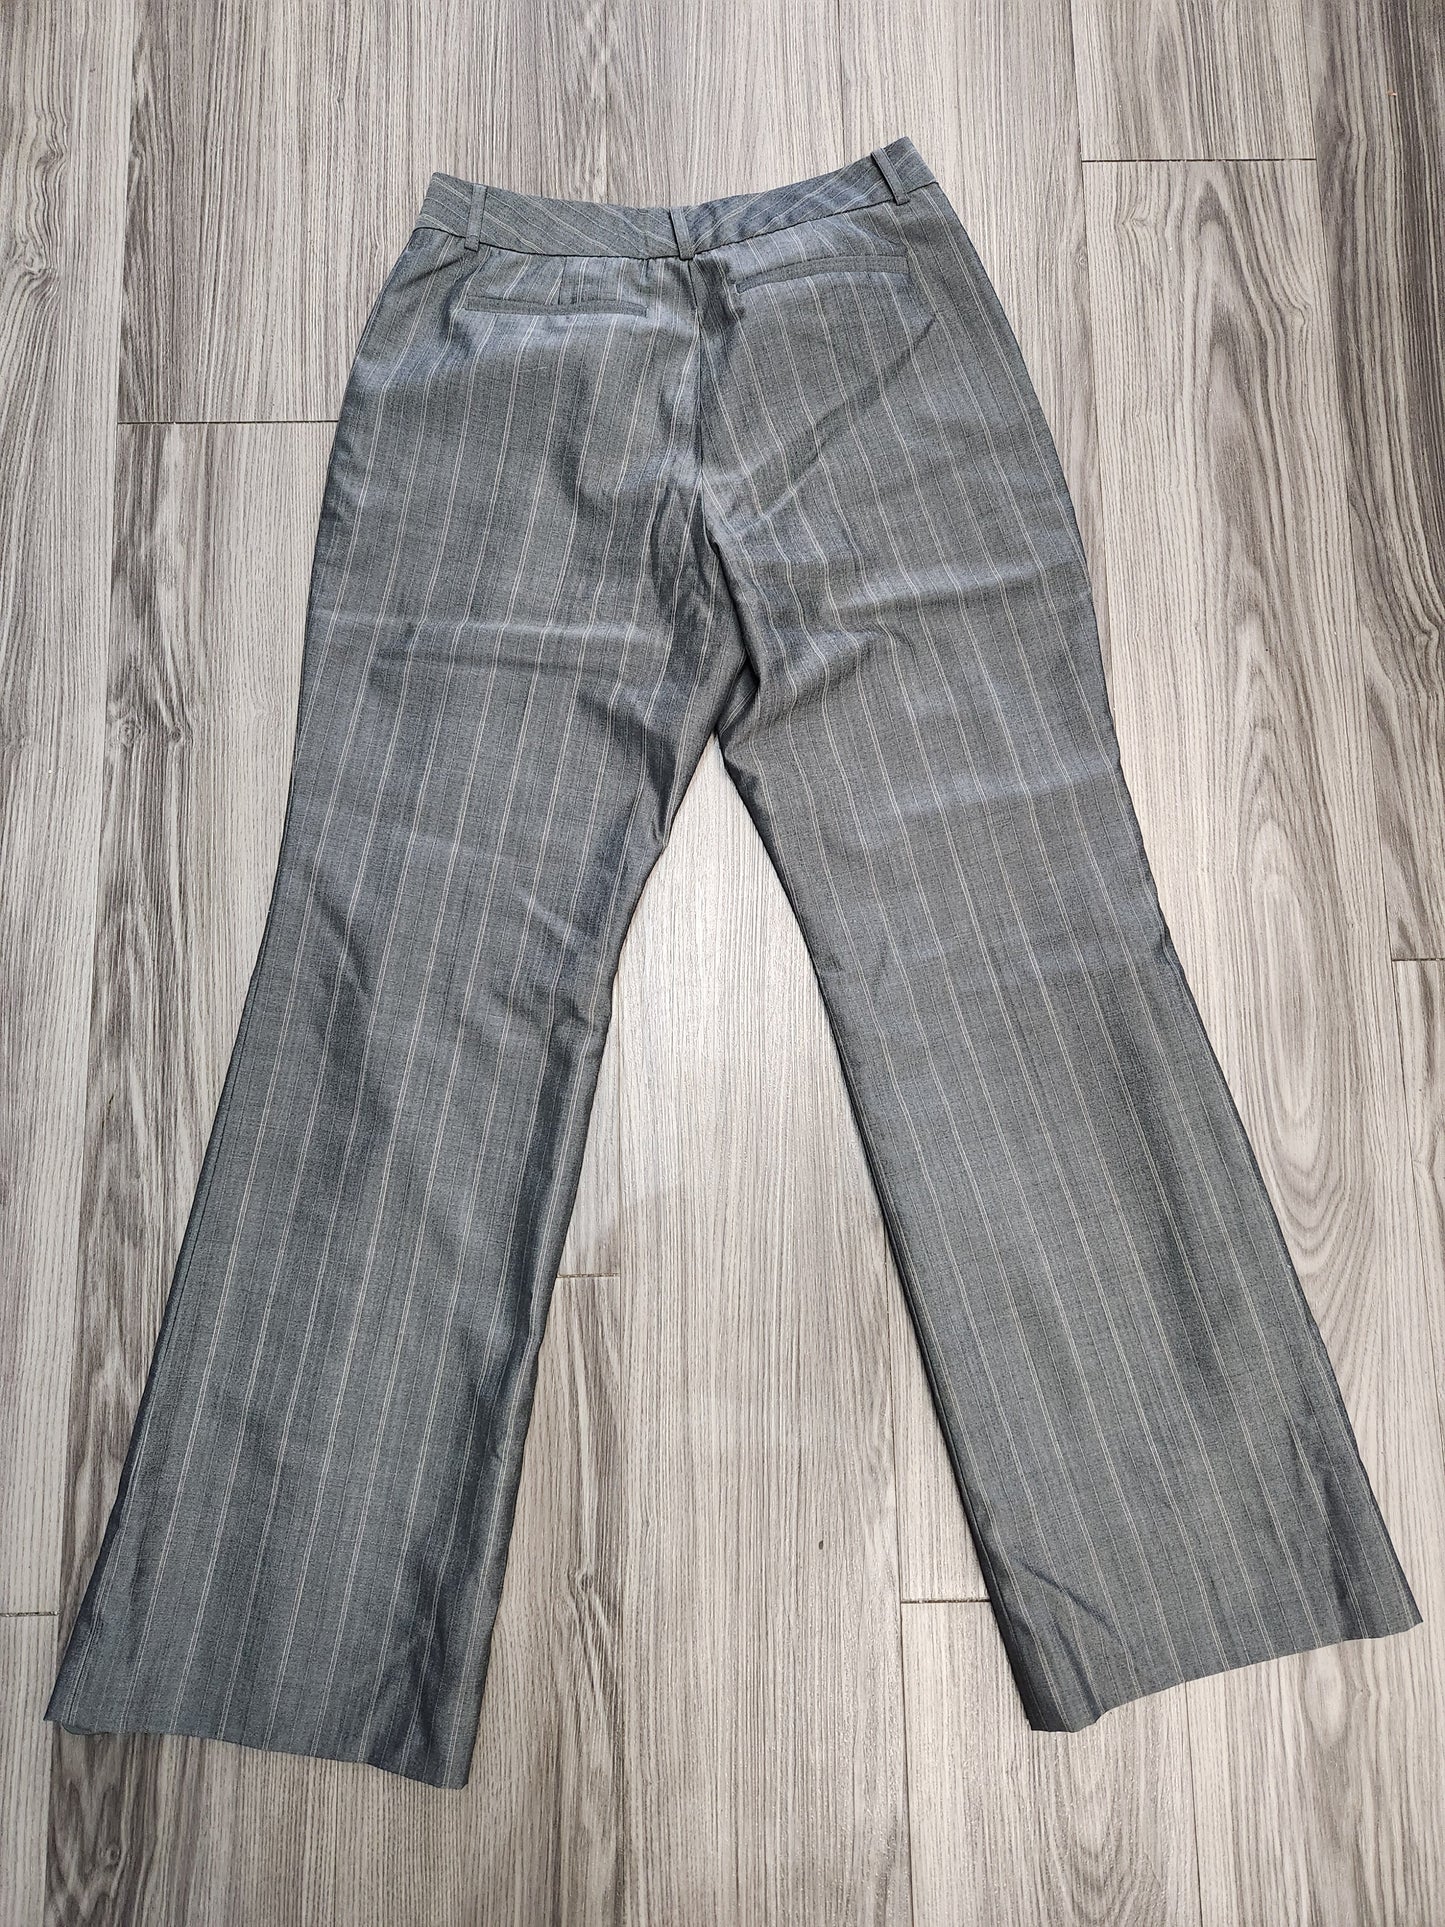 Pants Dress By Anne Klein  Size: 10